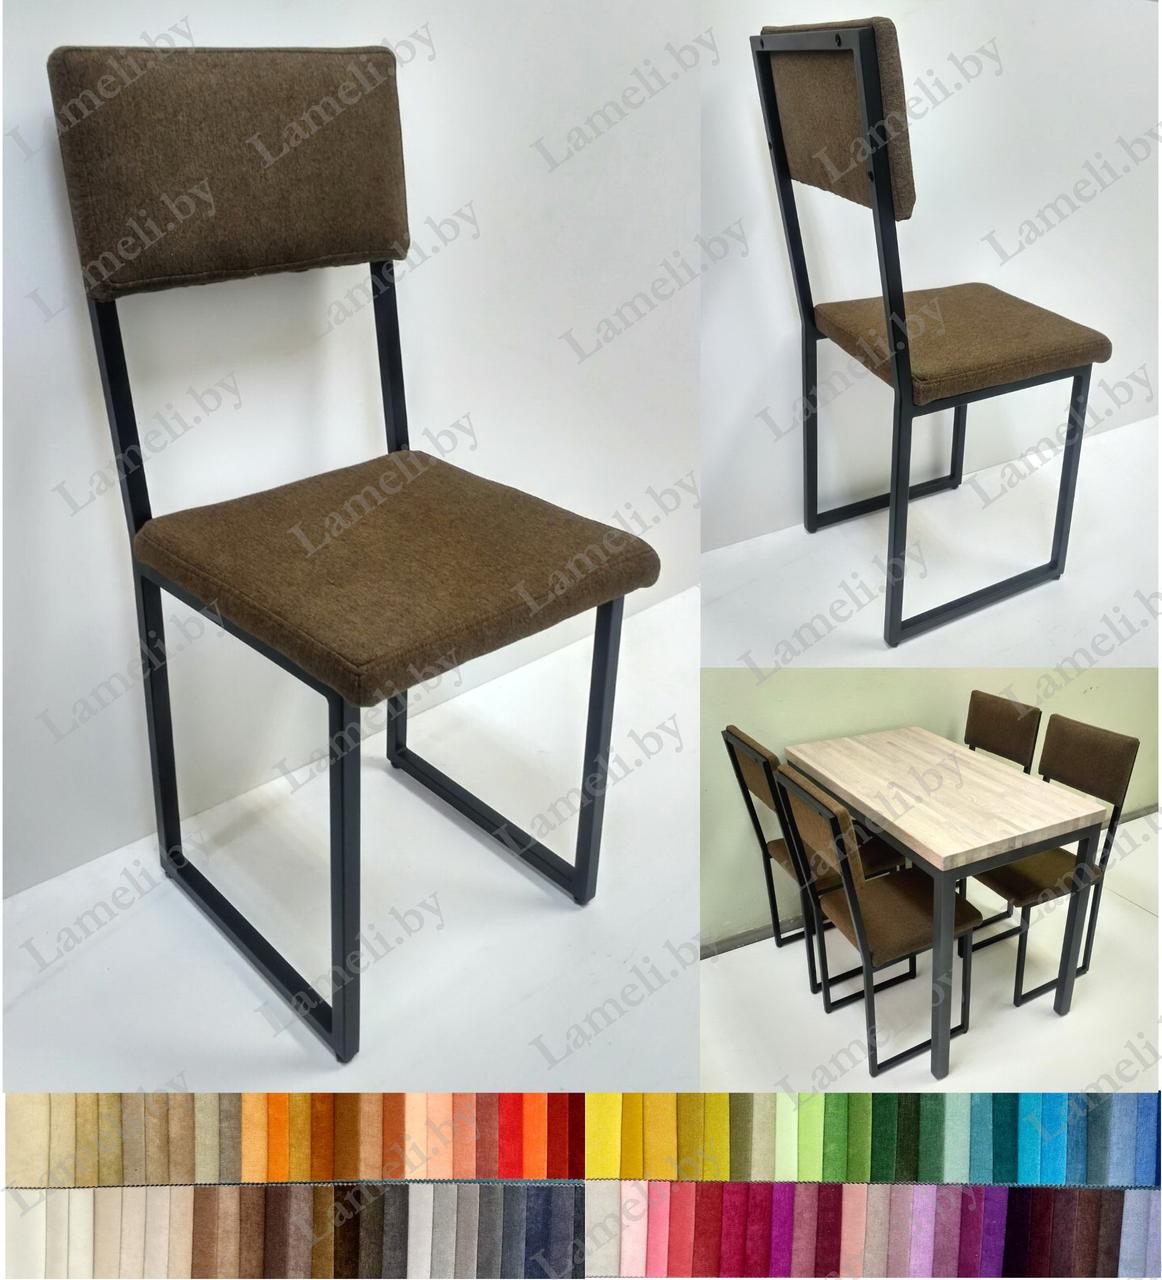 Кухонный обеденный стул на металлокаркасе КУБ М-2 с выбором цвета и размера, фото 1